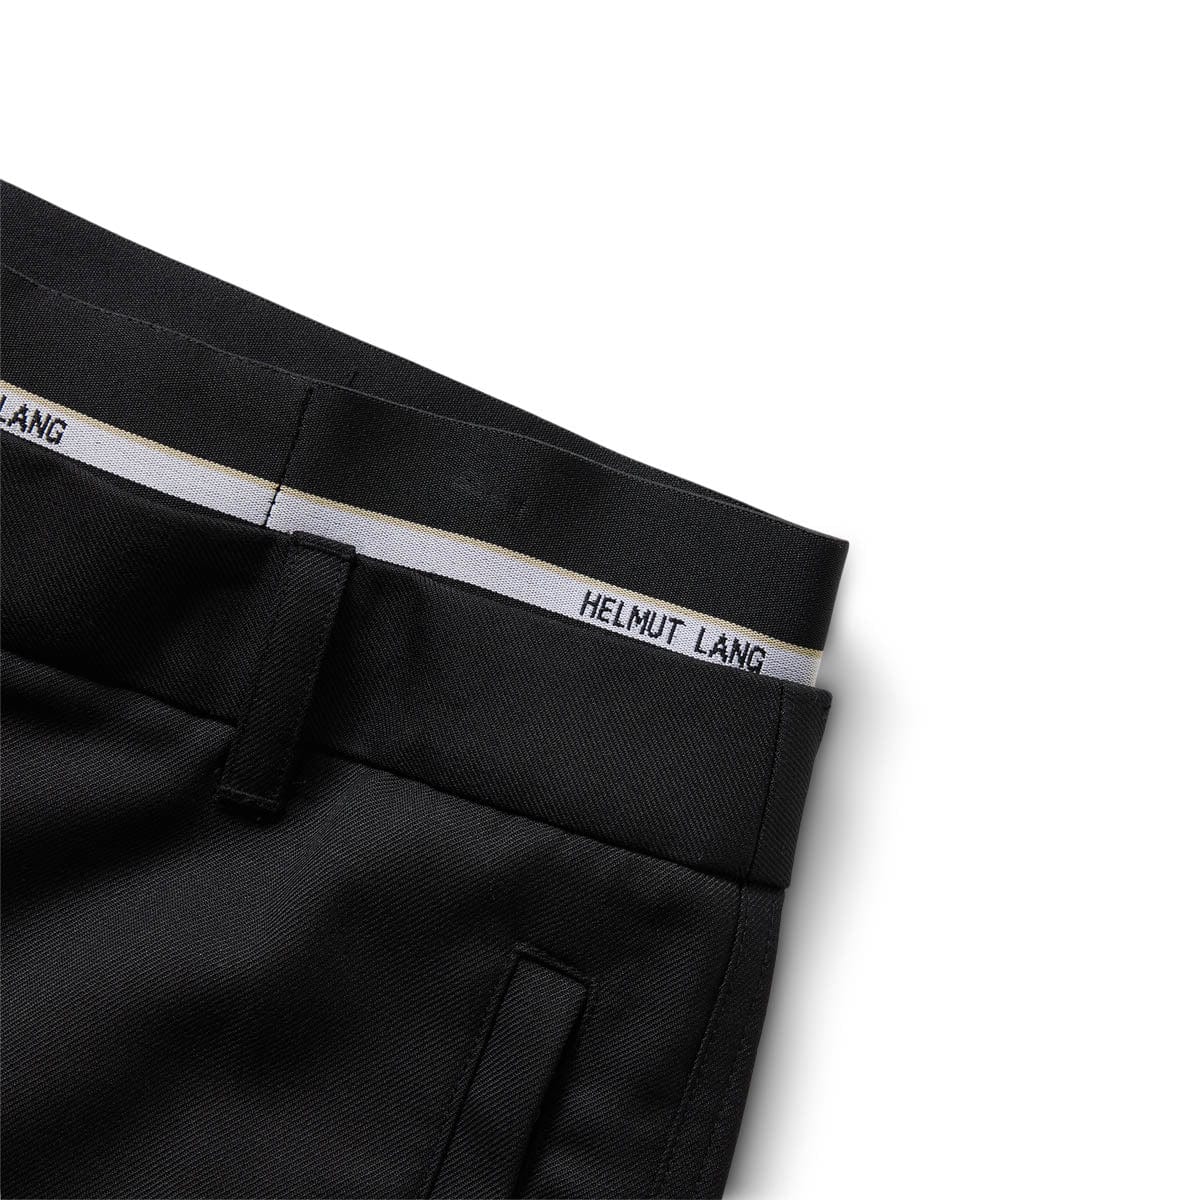 ELASTIC LOGO BAND PANTS BLACK - 001 | Bodega